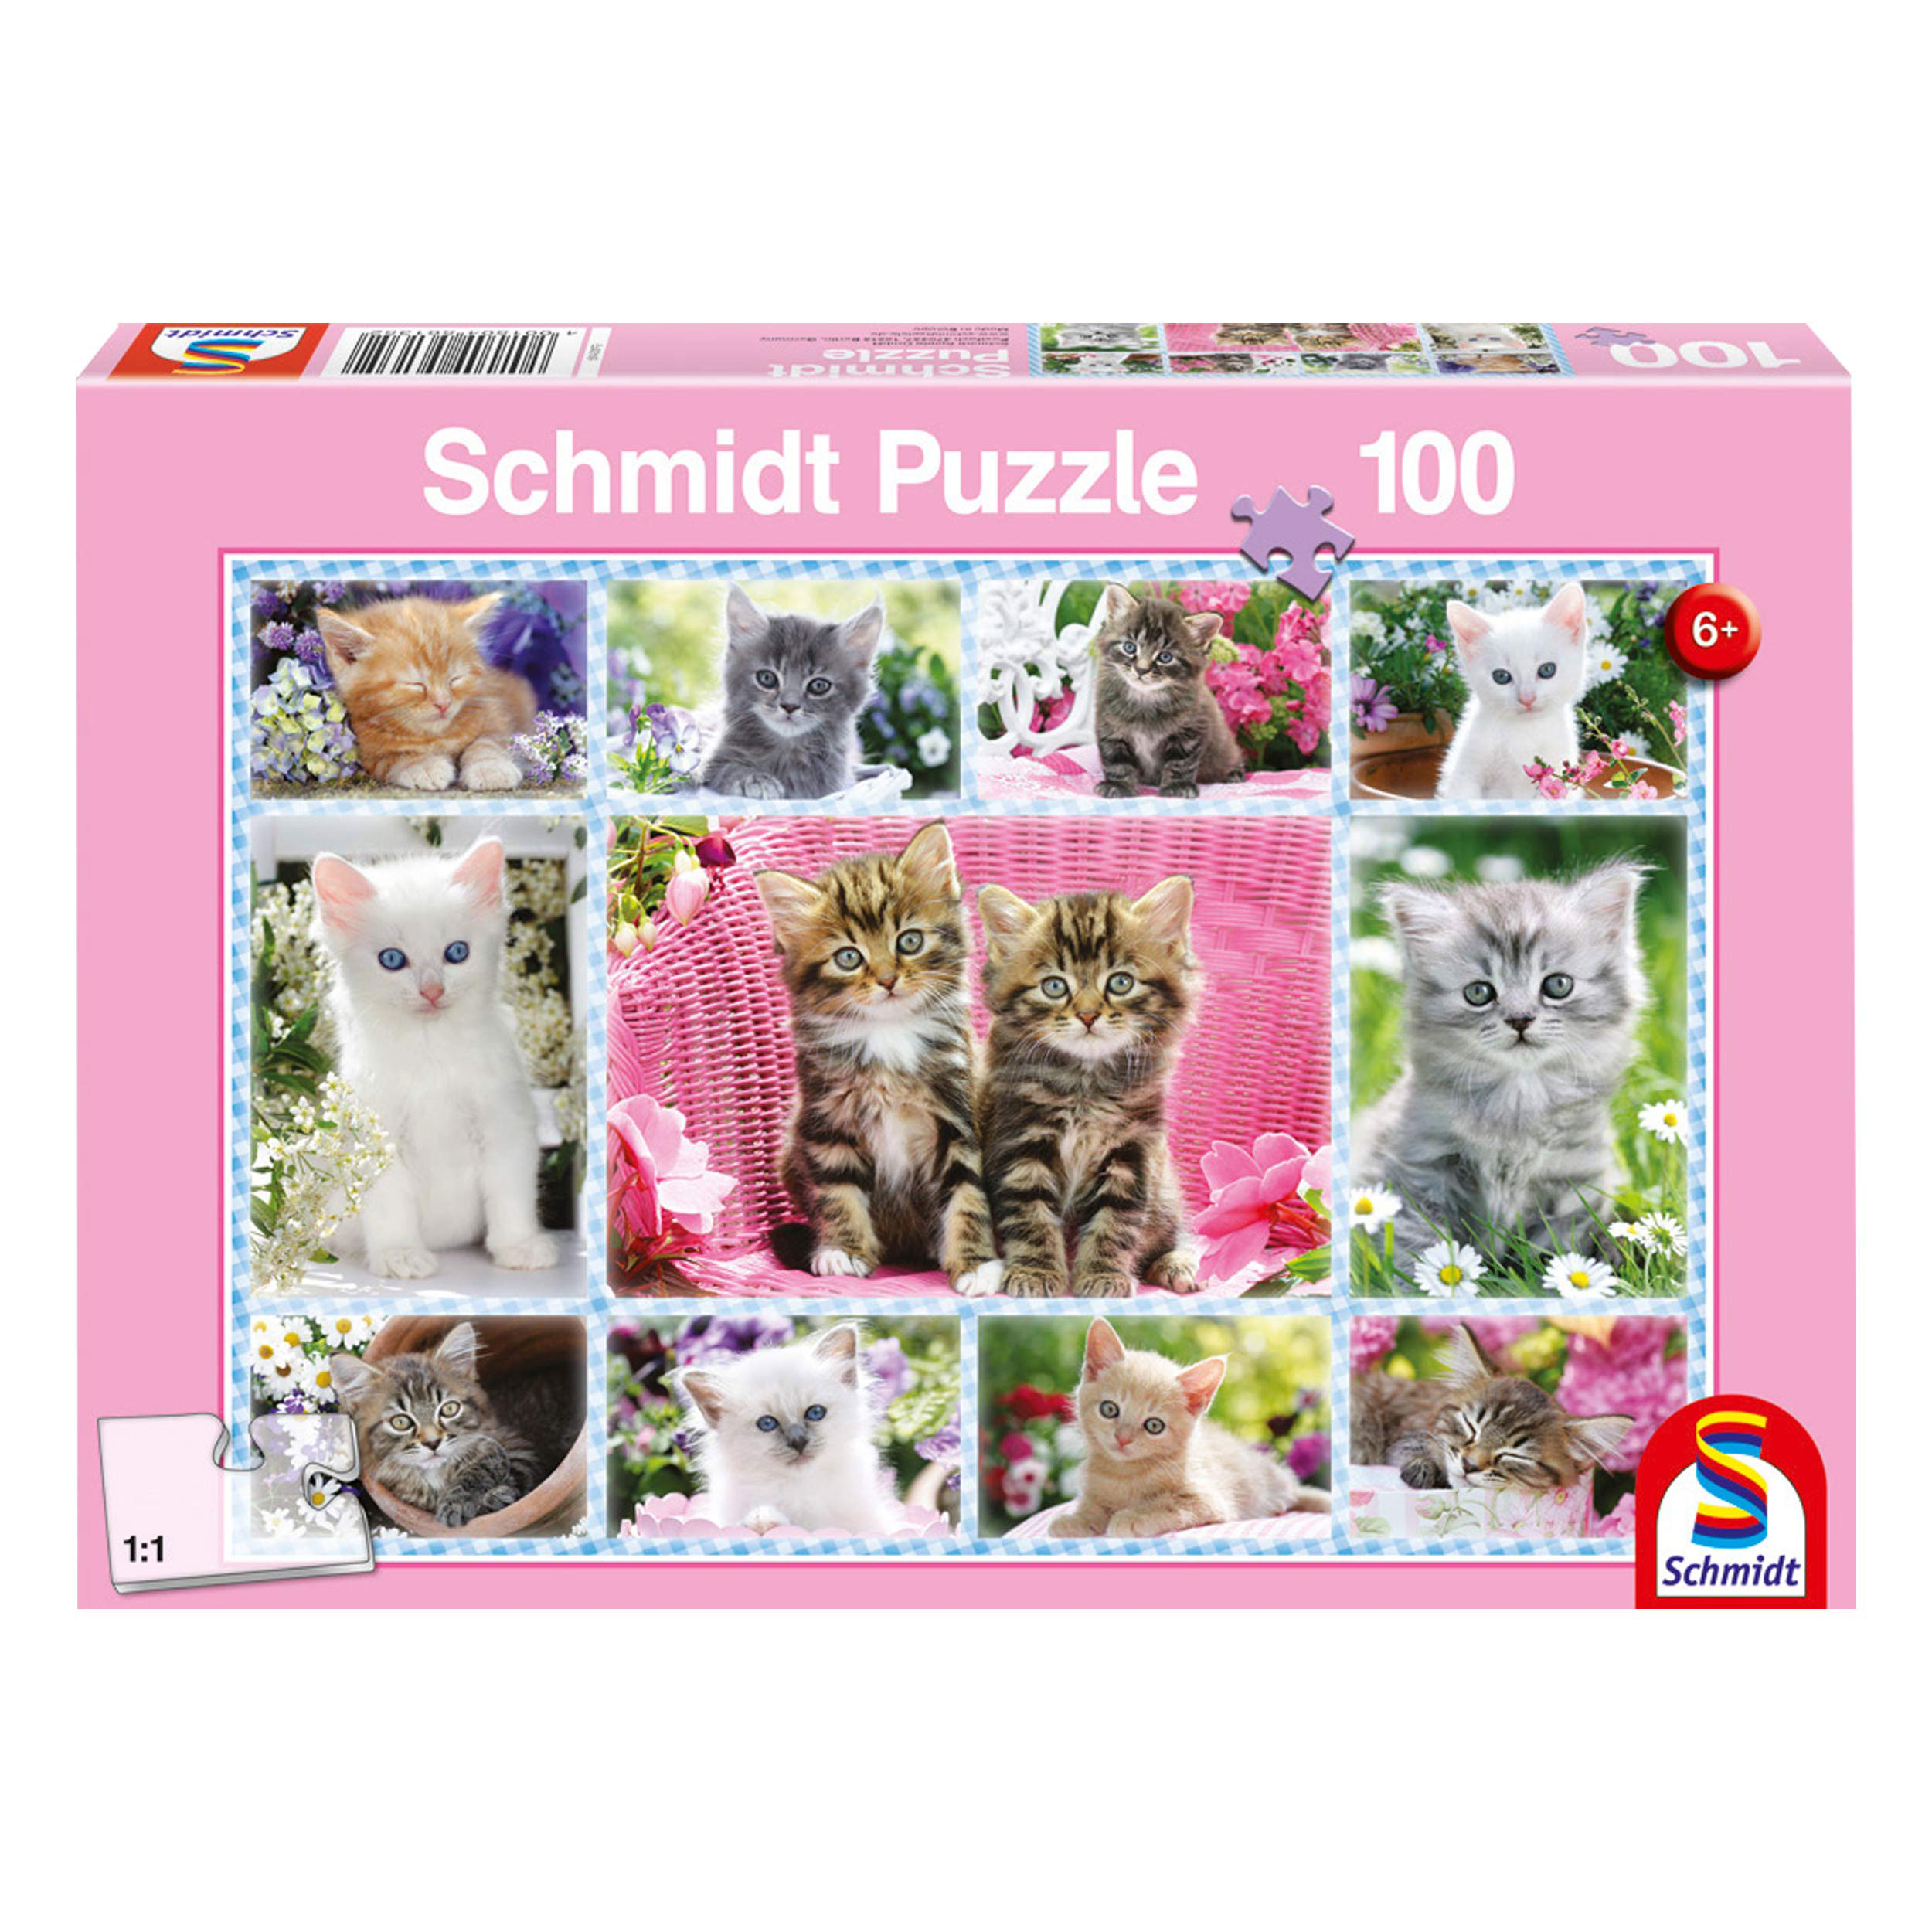 SCHMIDT SPIELE Katzenbabys - Puzzle Puzzle Teile 100